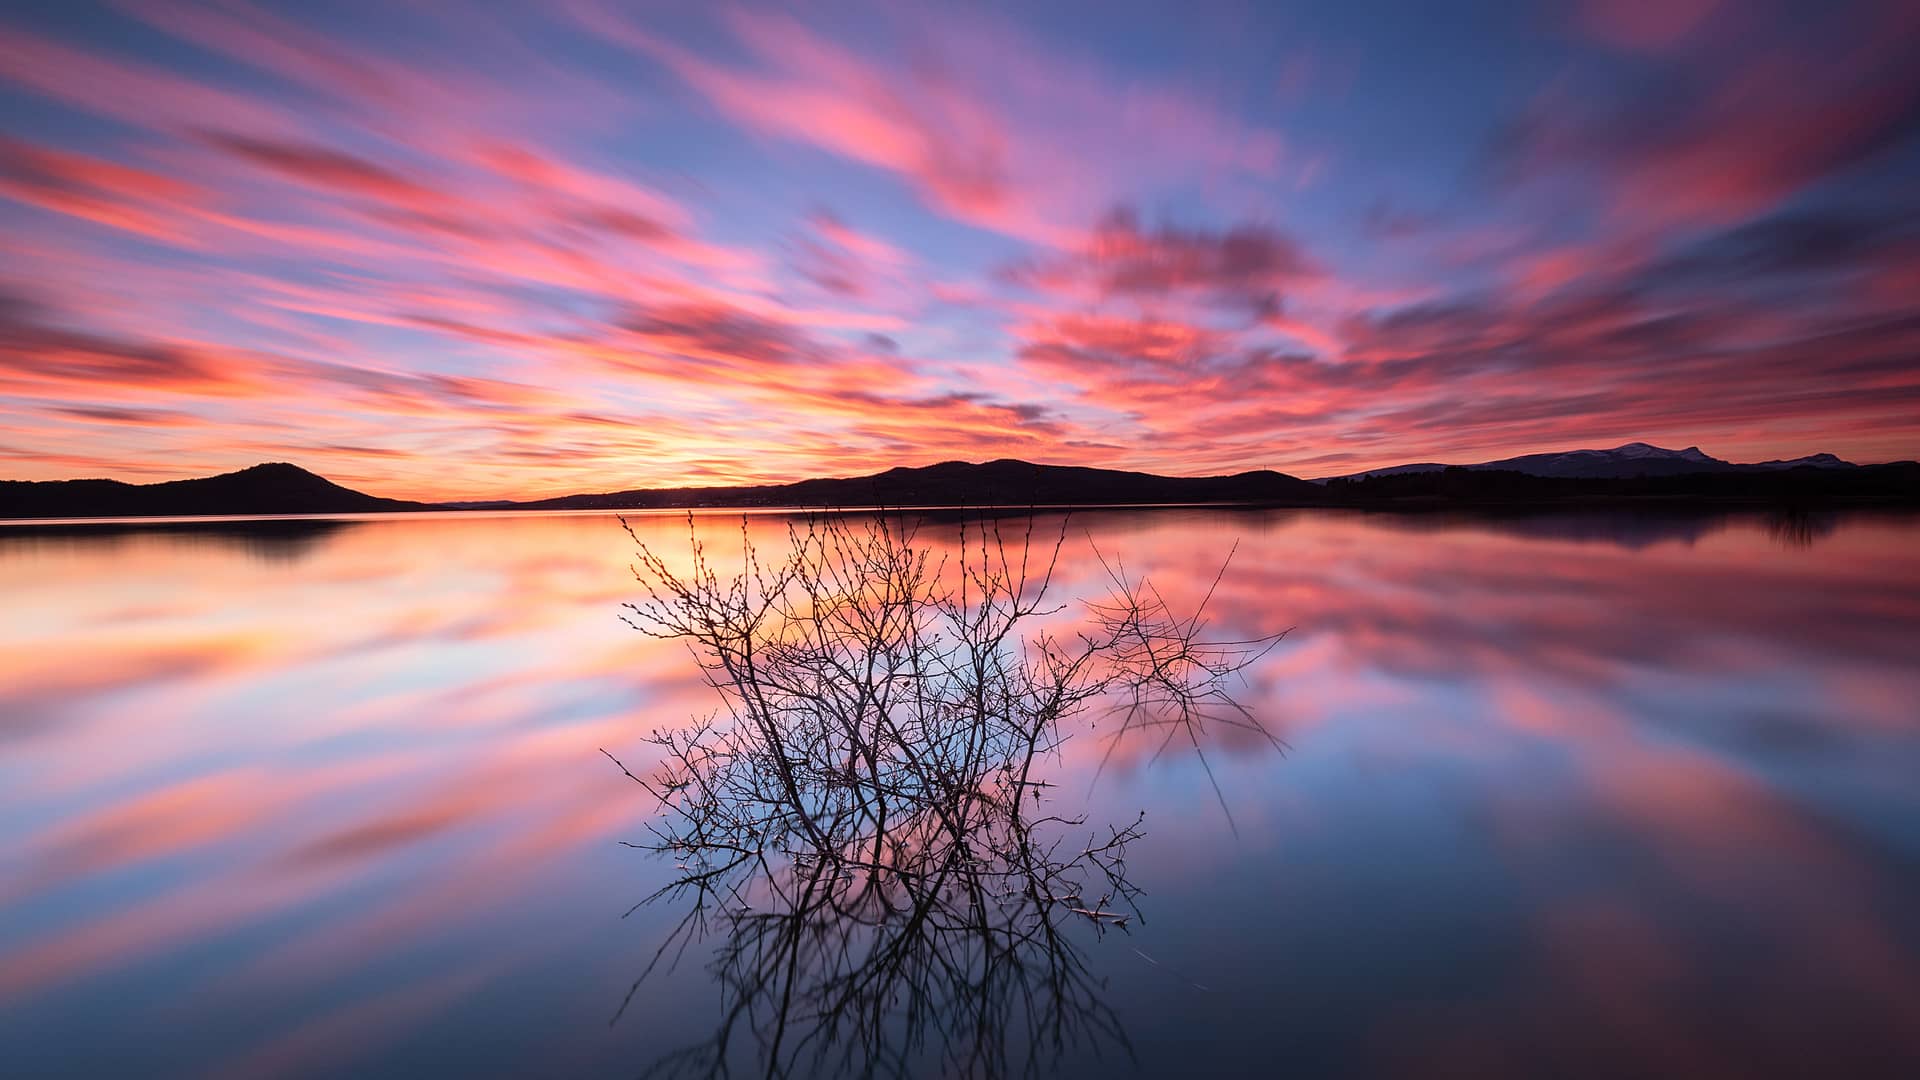 Colorido atardecer reflejado en un lago en Vitoria donde esta disponible la compañía telefónica orange